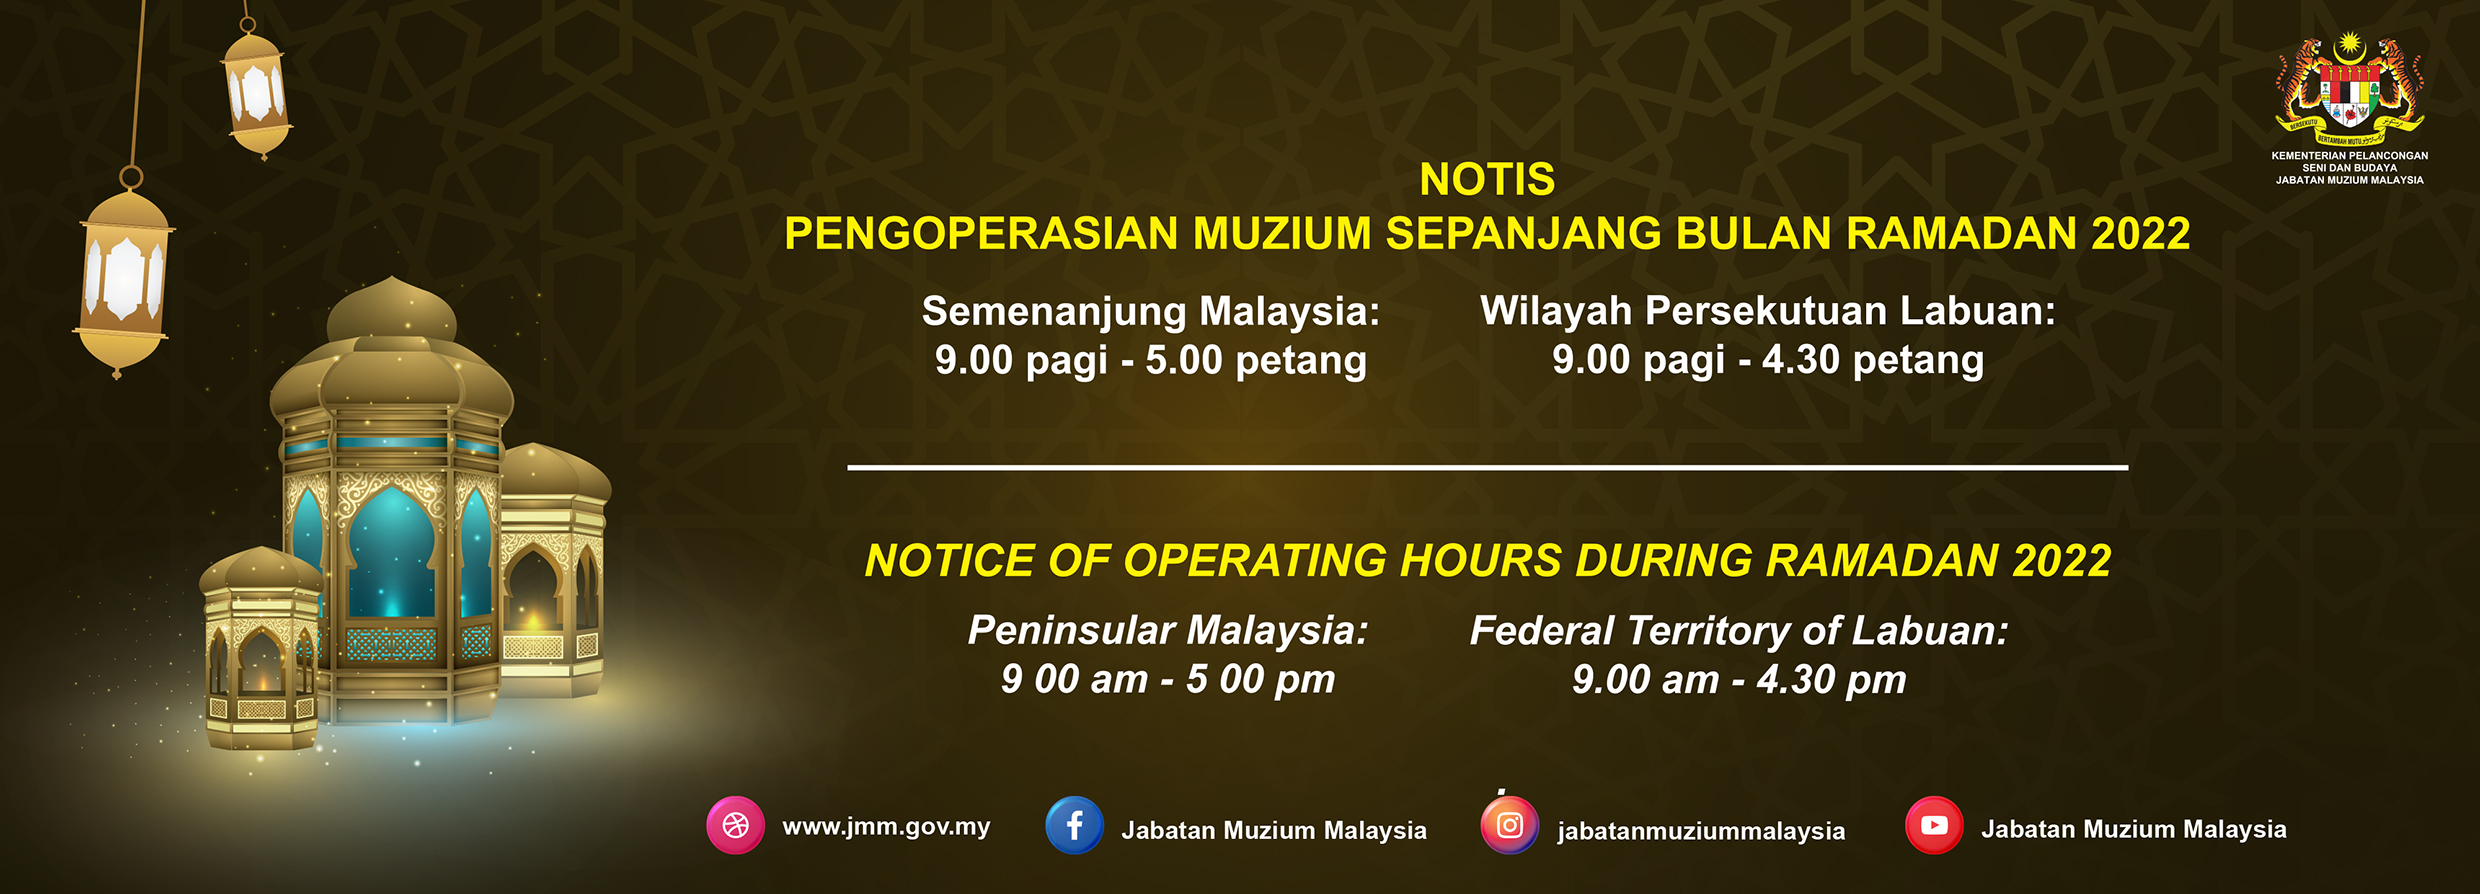 Notis Pengoperasian Muzium Sepanjang Bulan Ramadan 2022